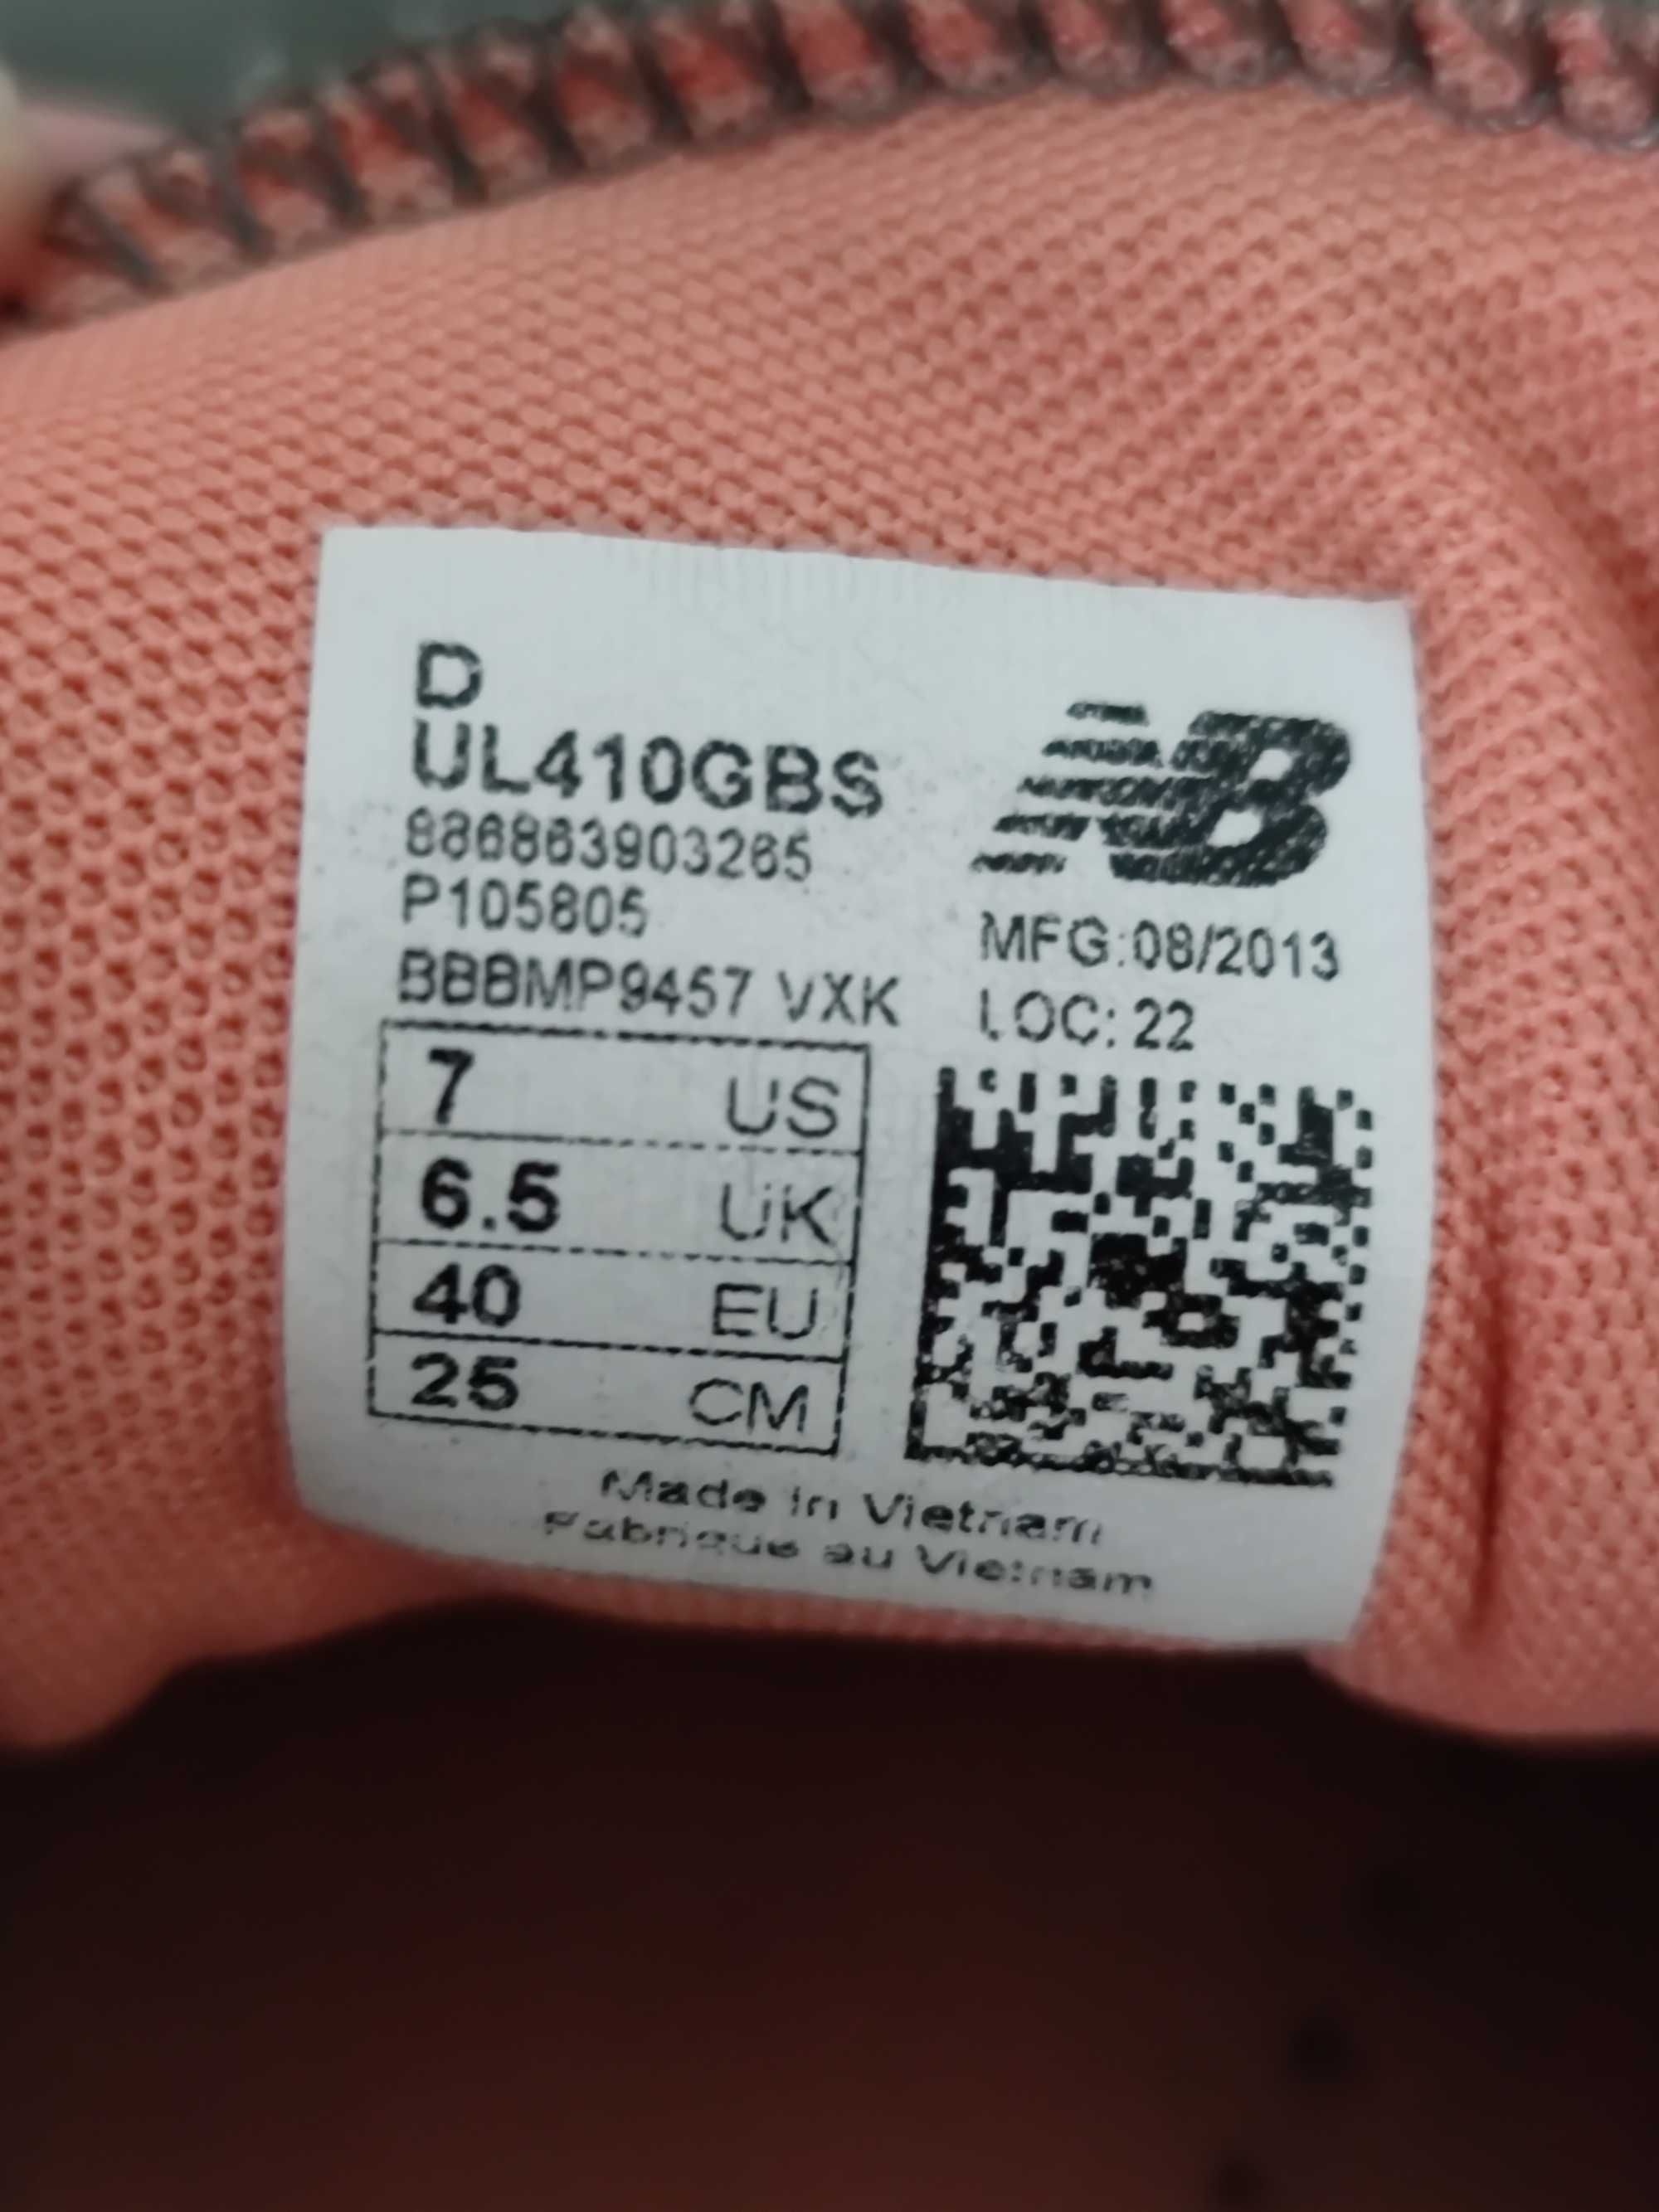 Szare damskie adidasy sneakersy New Balance 410 UL410GBS rozmiar 40